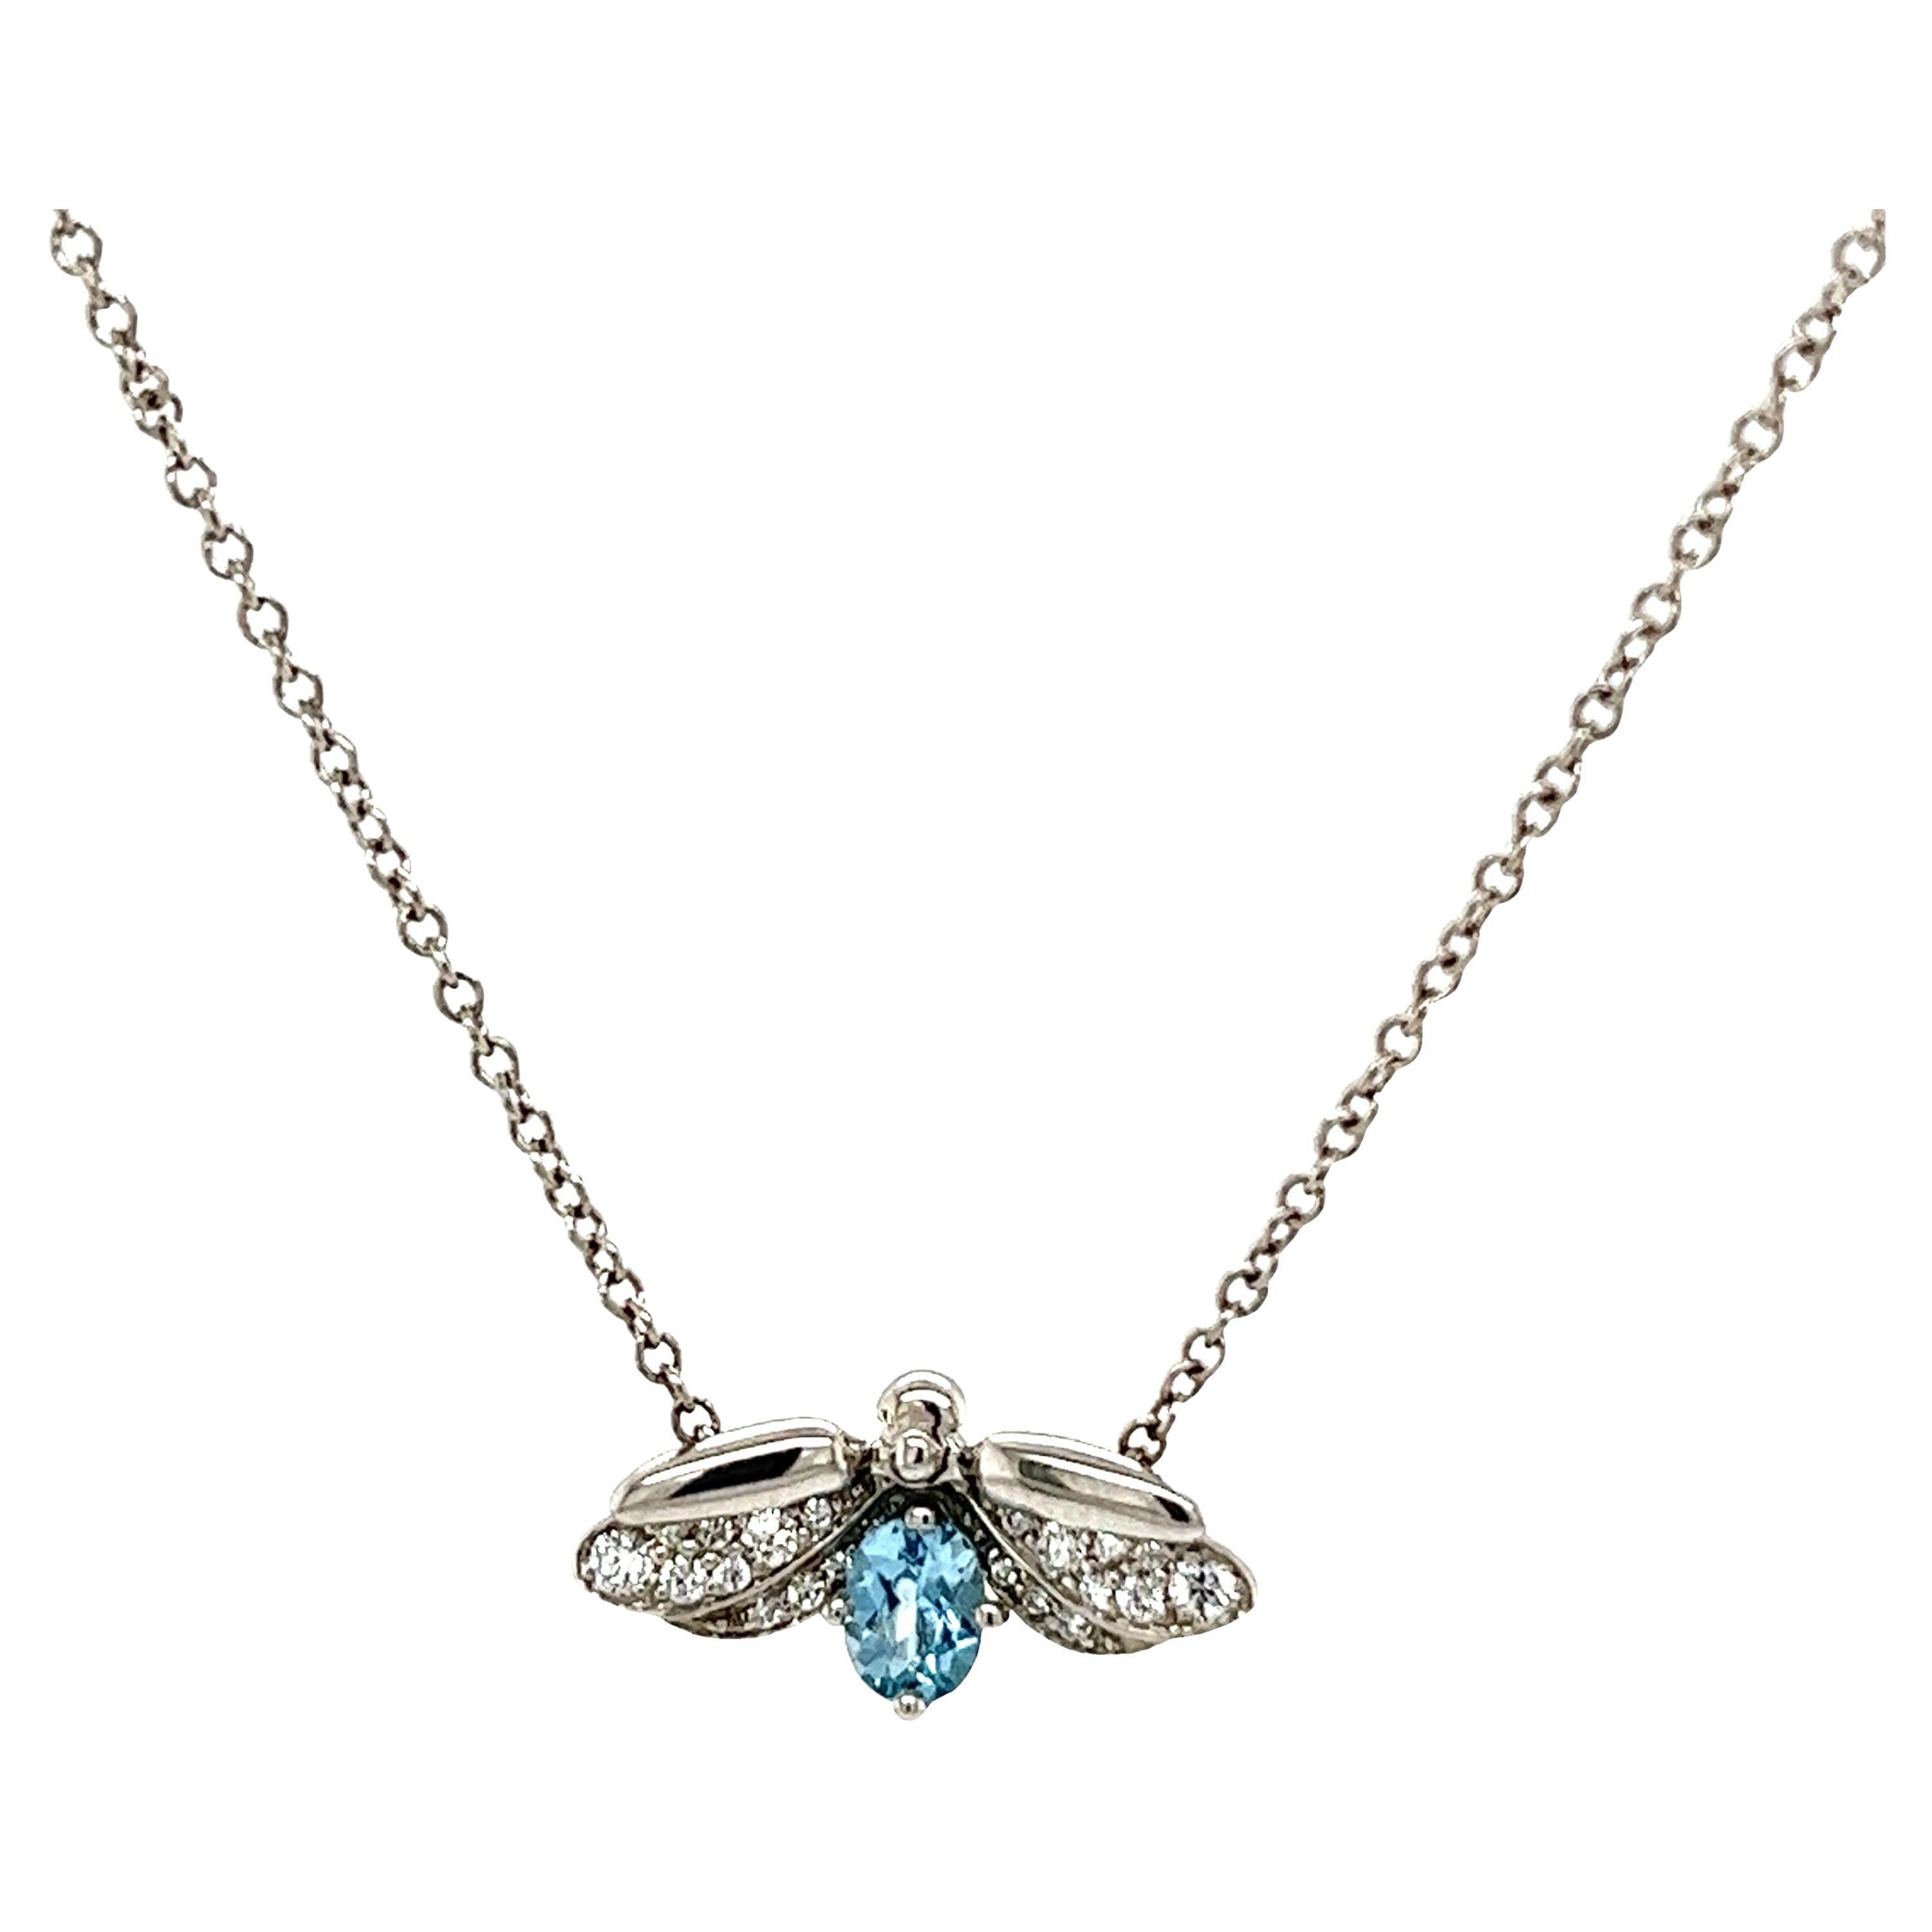 Halskette mit Aquamarin-Feuerfly-Anhänger von Tiffany & Co